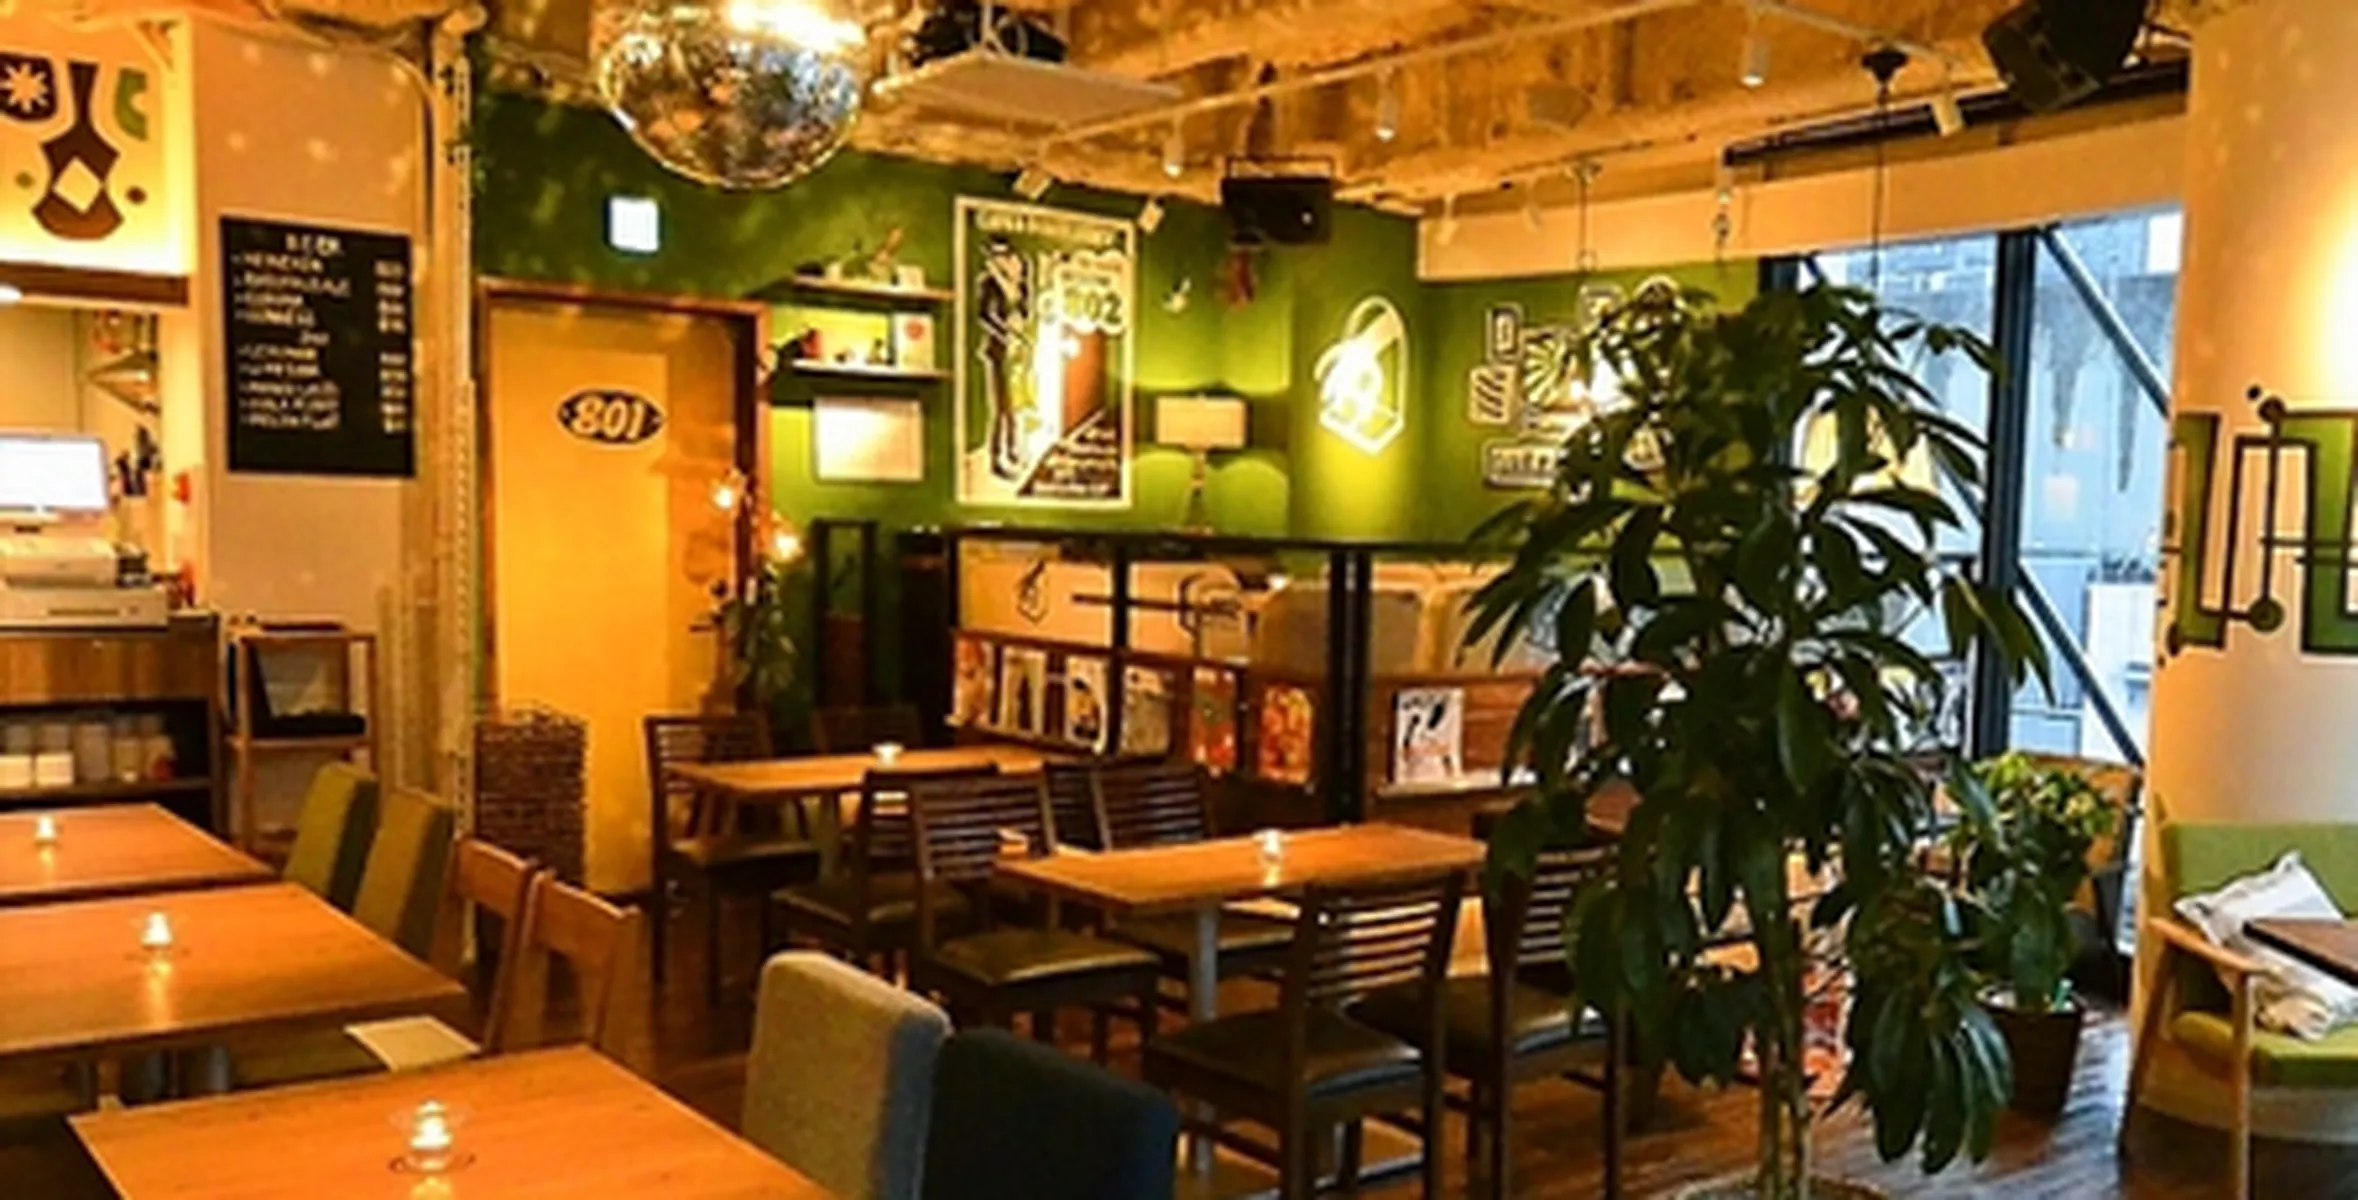 #802 CAFE&DINER 渋谷店の店内写真